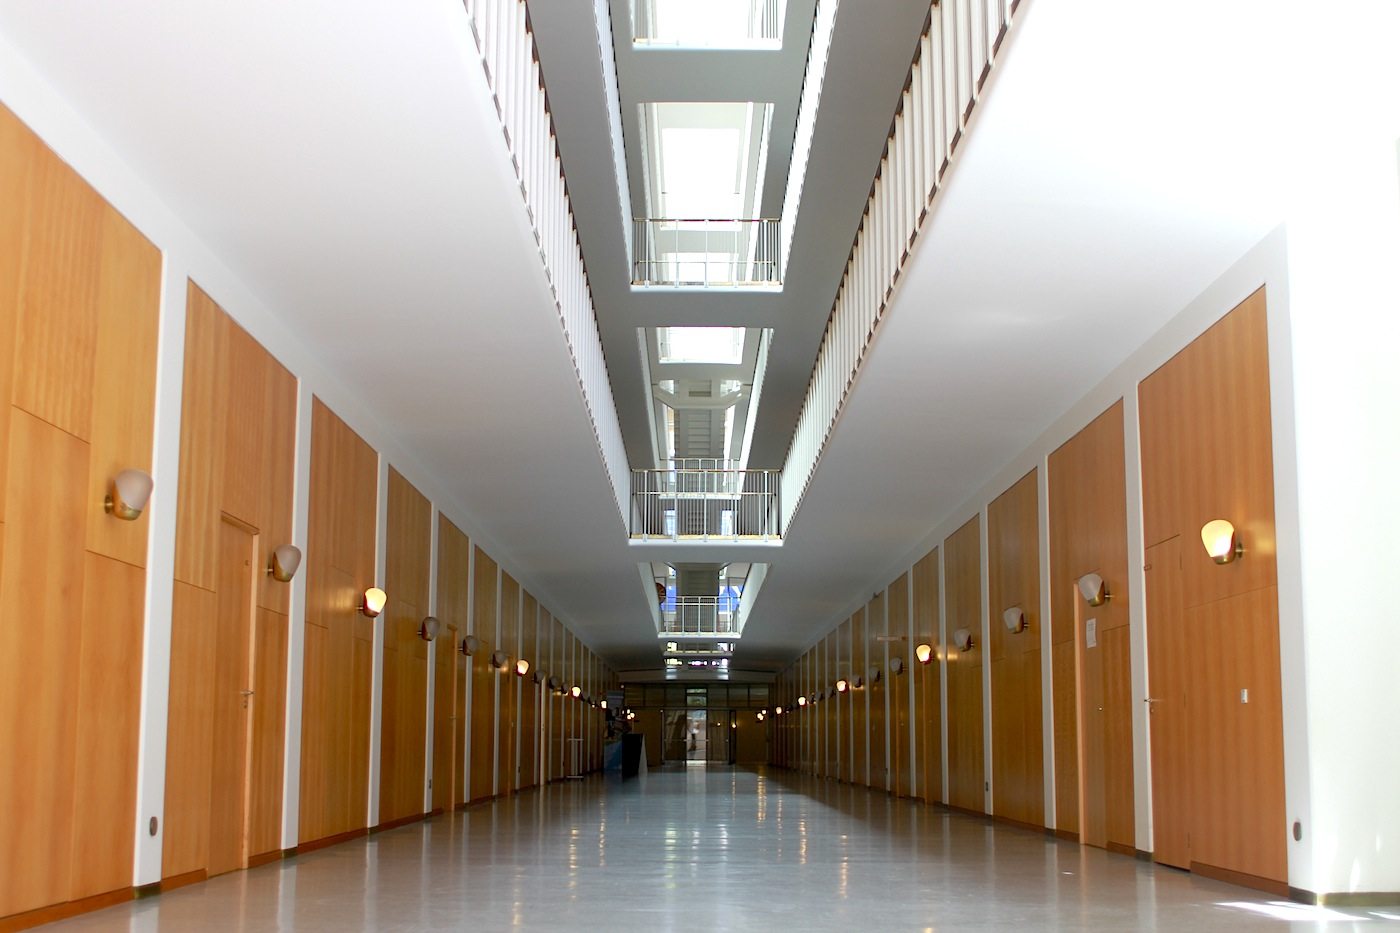 Ganz und gar. symmetrisch und einheitlich sind Bürotrakte und die anderen Bereiche des Gebäudes gestaltet. 